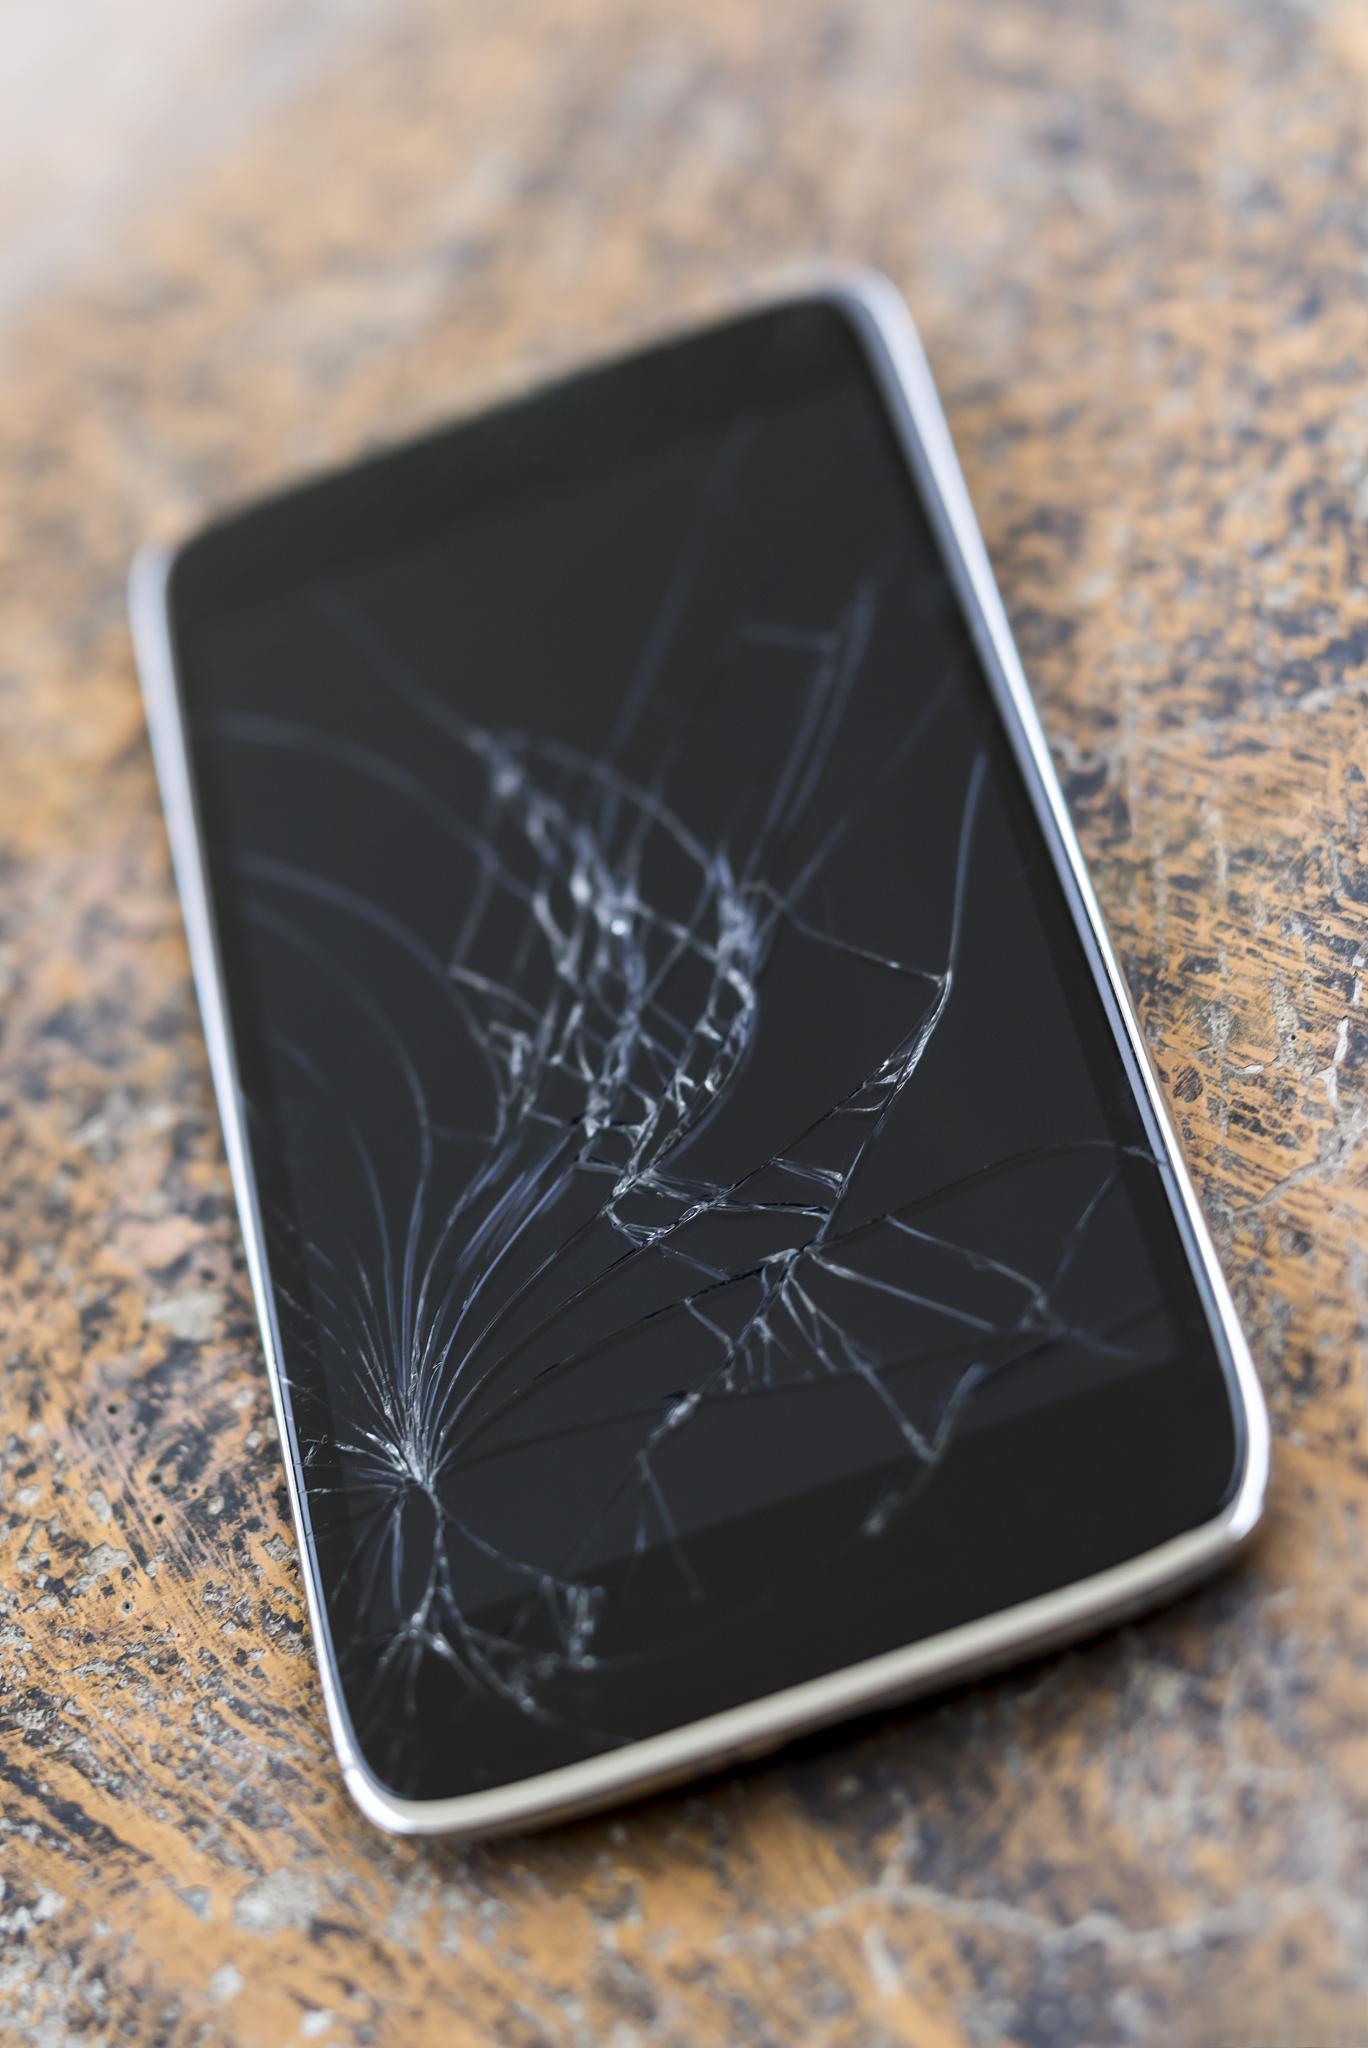 手机屏幕碎了怎么办 手机屏幕碎了可以采取以下几个步骤进行补救